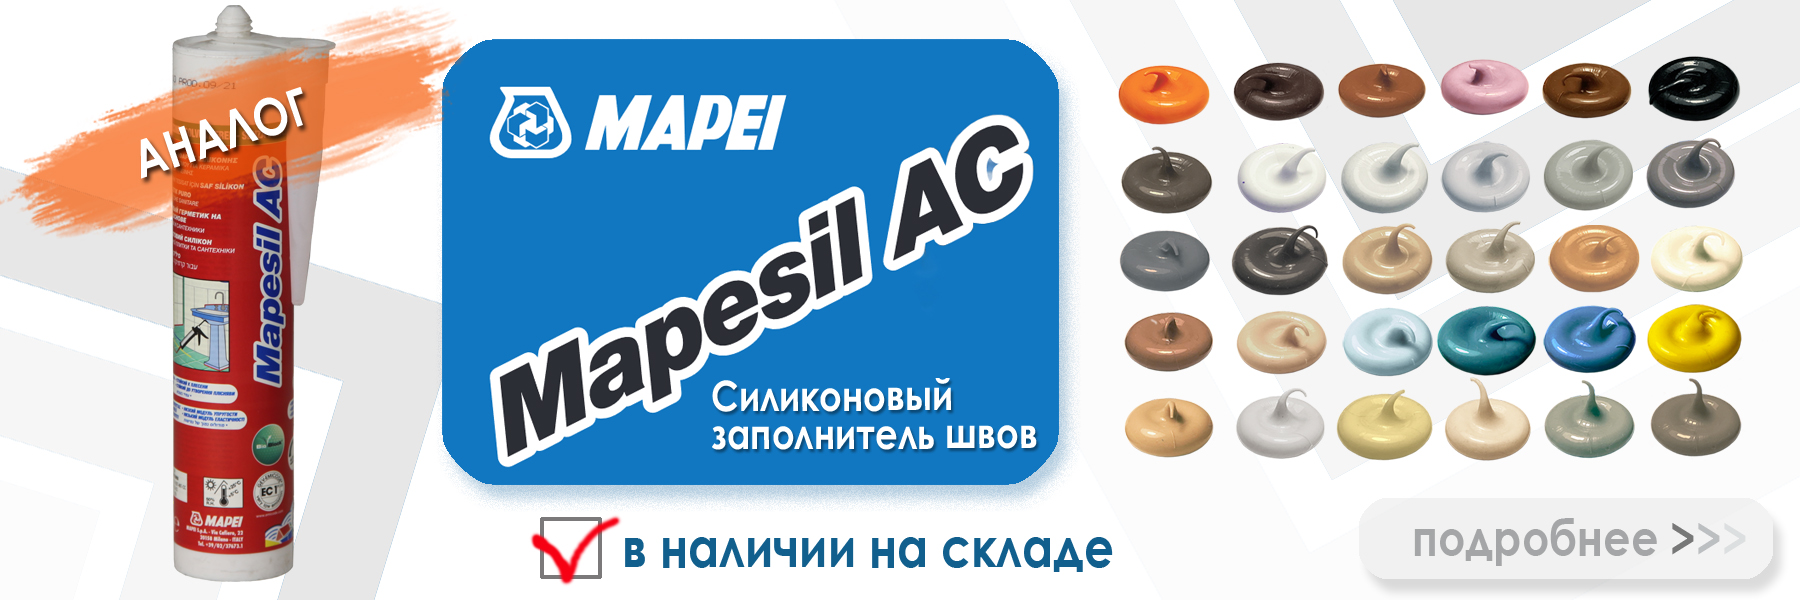 аналог силиконовой затирки Ceresit CS 25 40 жасмин  - Mapei Mapesil AC